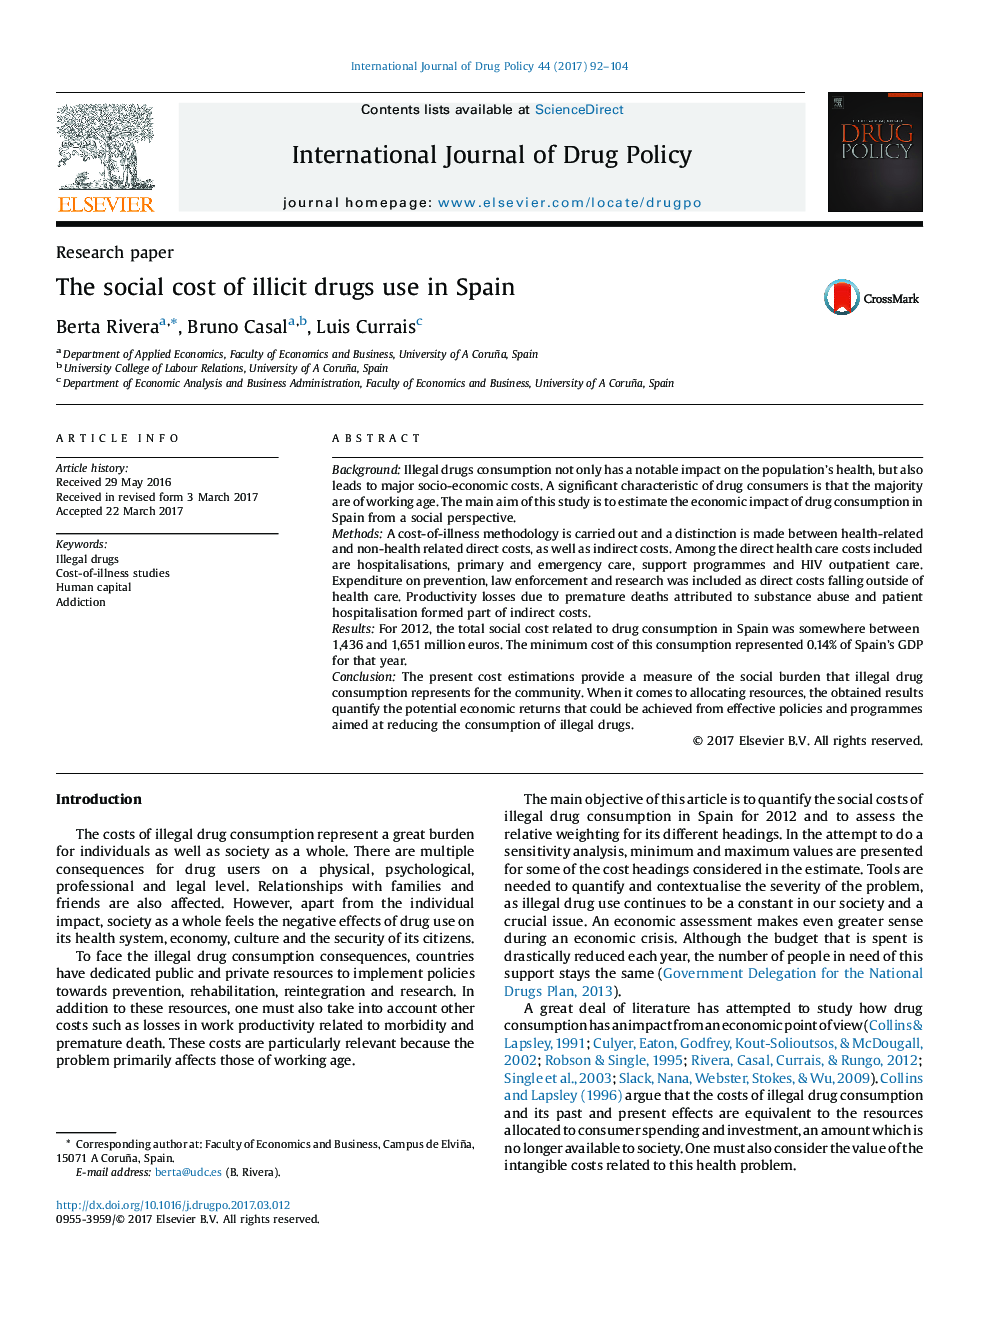 هزینه های اجتماعی مصرف مواد مخدر در اسپانیا 